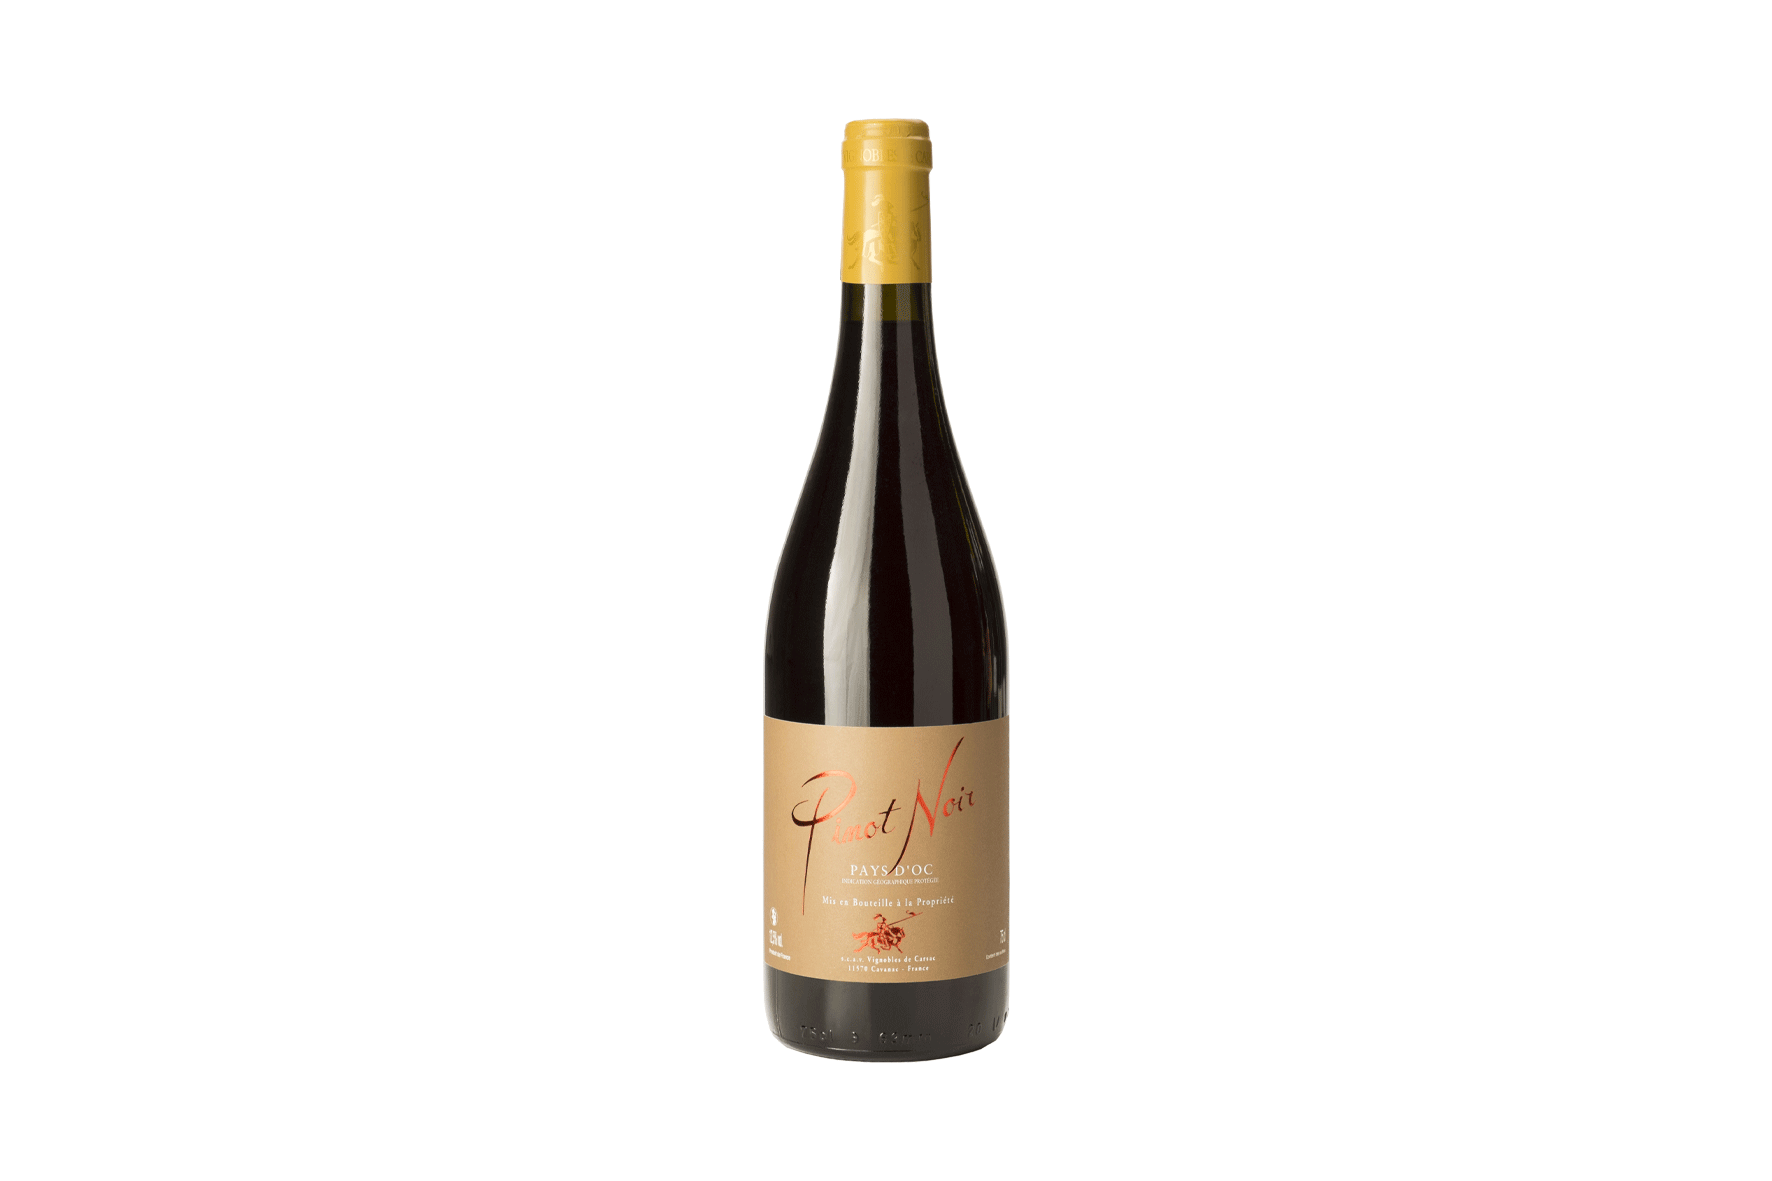 Bouteille de vin rouge Pinot Noir des Vignobles de Carsac